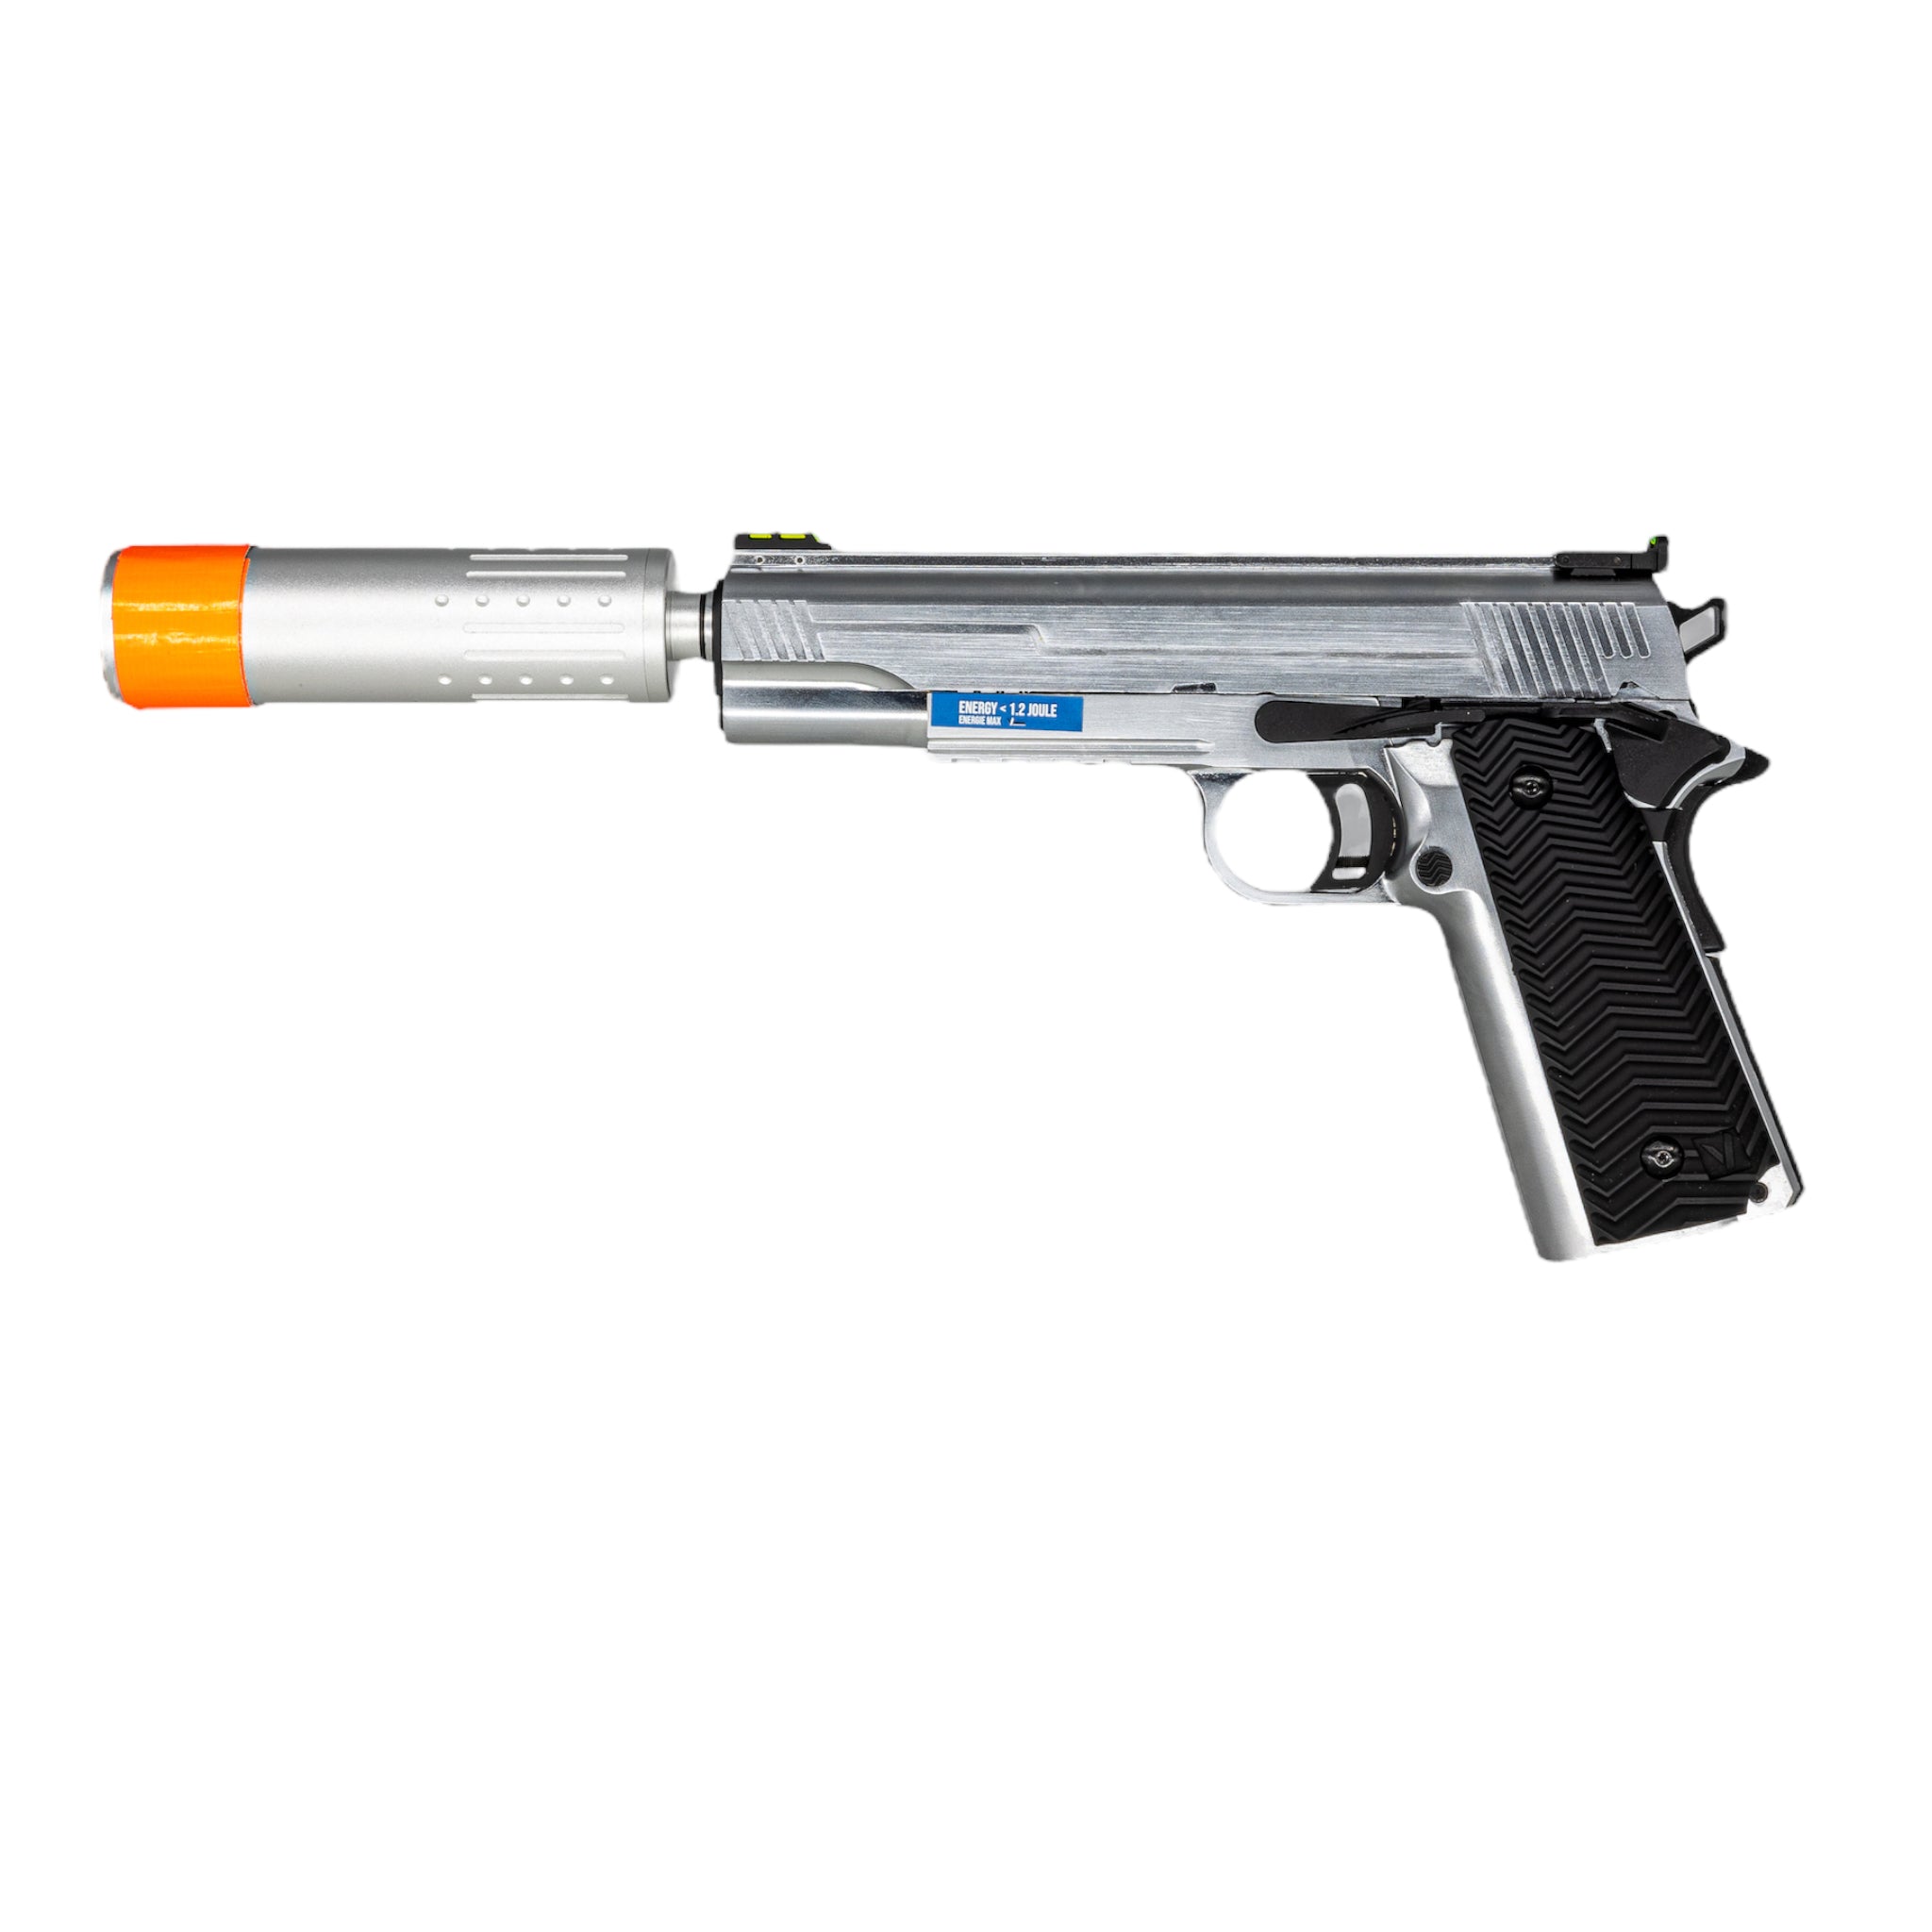 Vorsk VX-14 Gas Blowback Pistol w/ Suppressor Kit (Silver) - ssairsoft.com